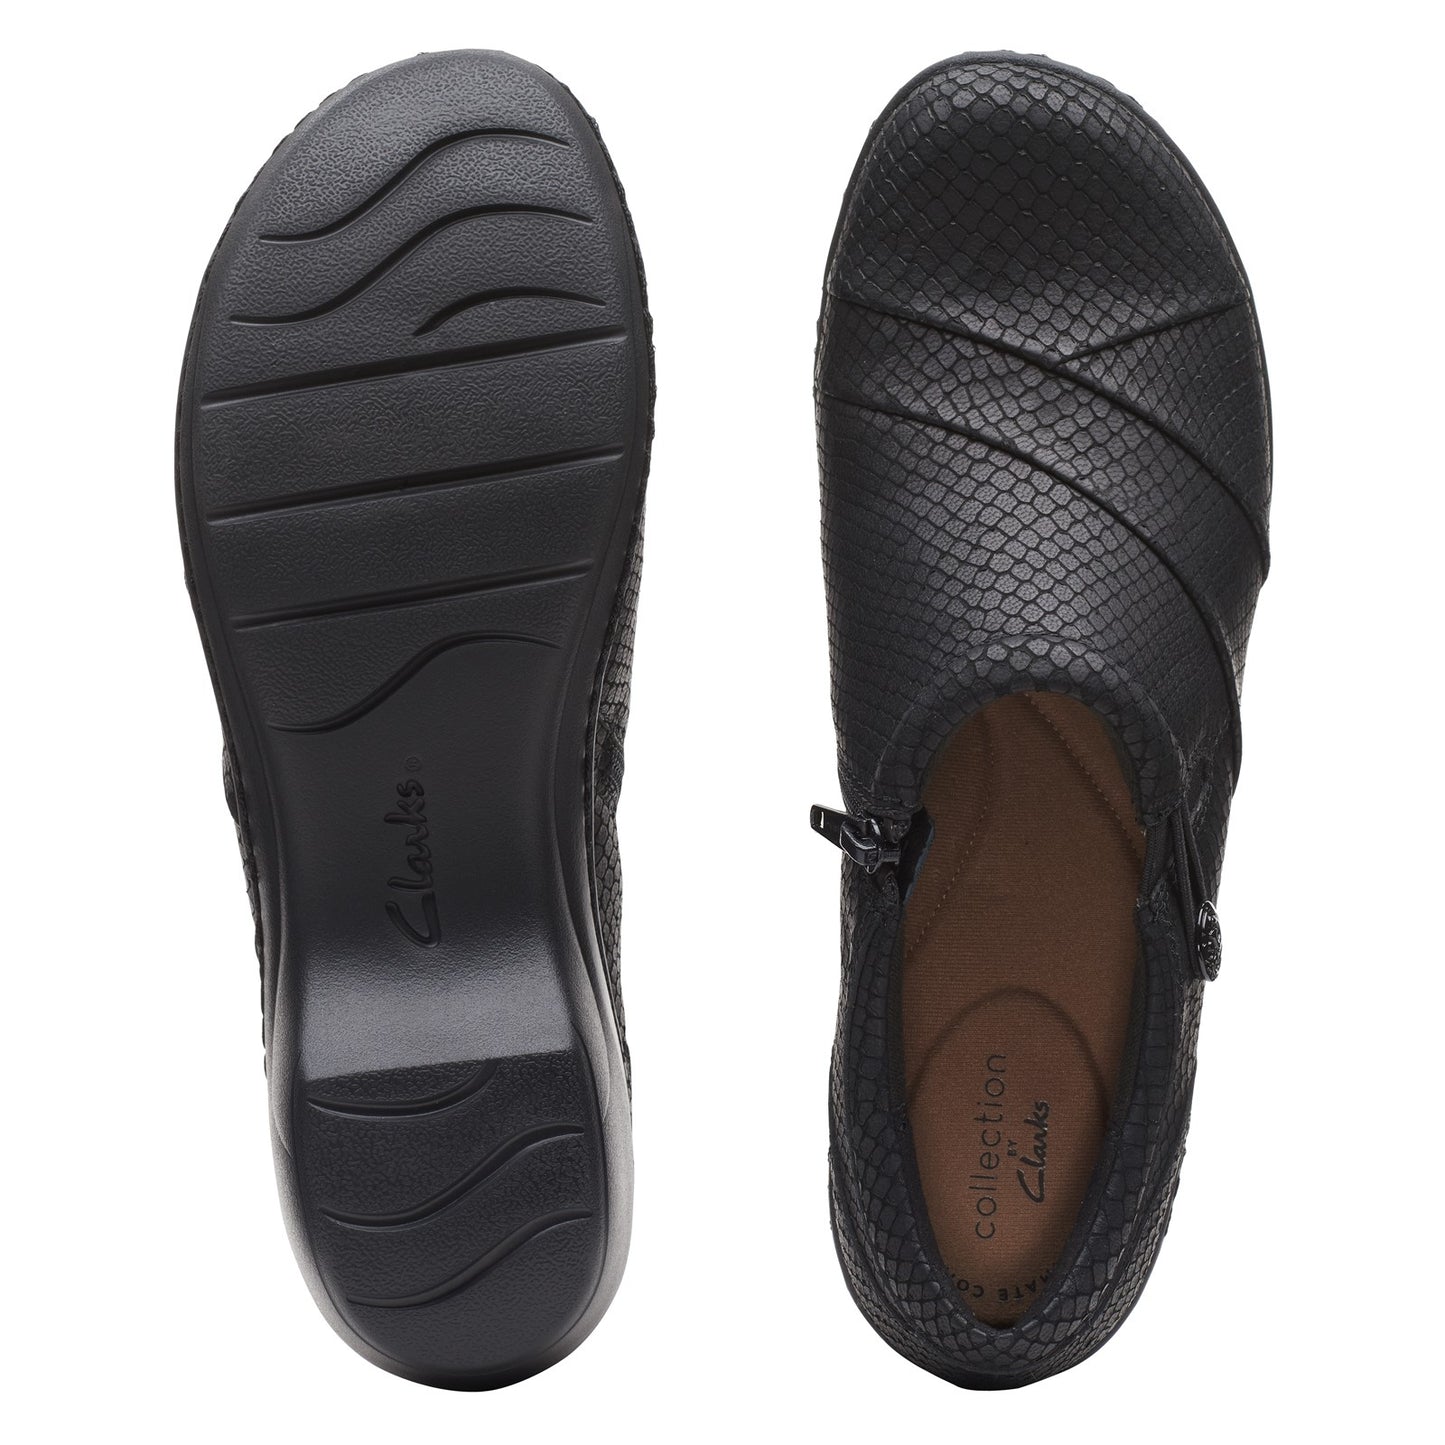 Peltz Shoes  Women's Clarks Channing Ann Slip-On BLACK EMBOSSED 26162539